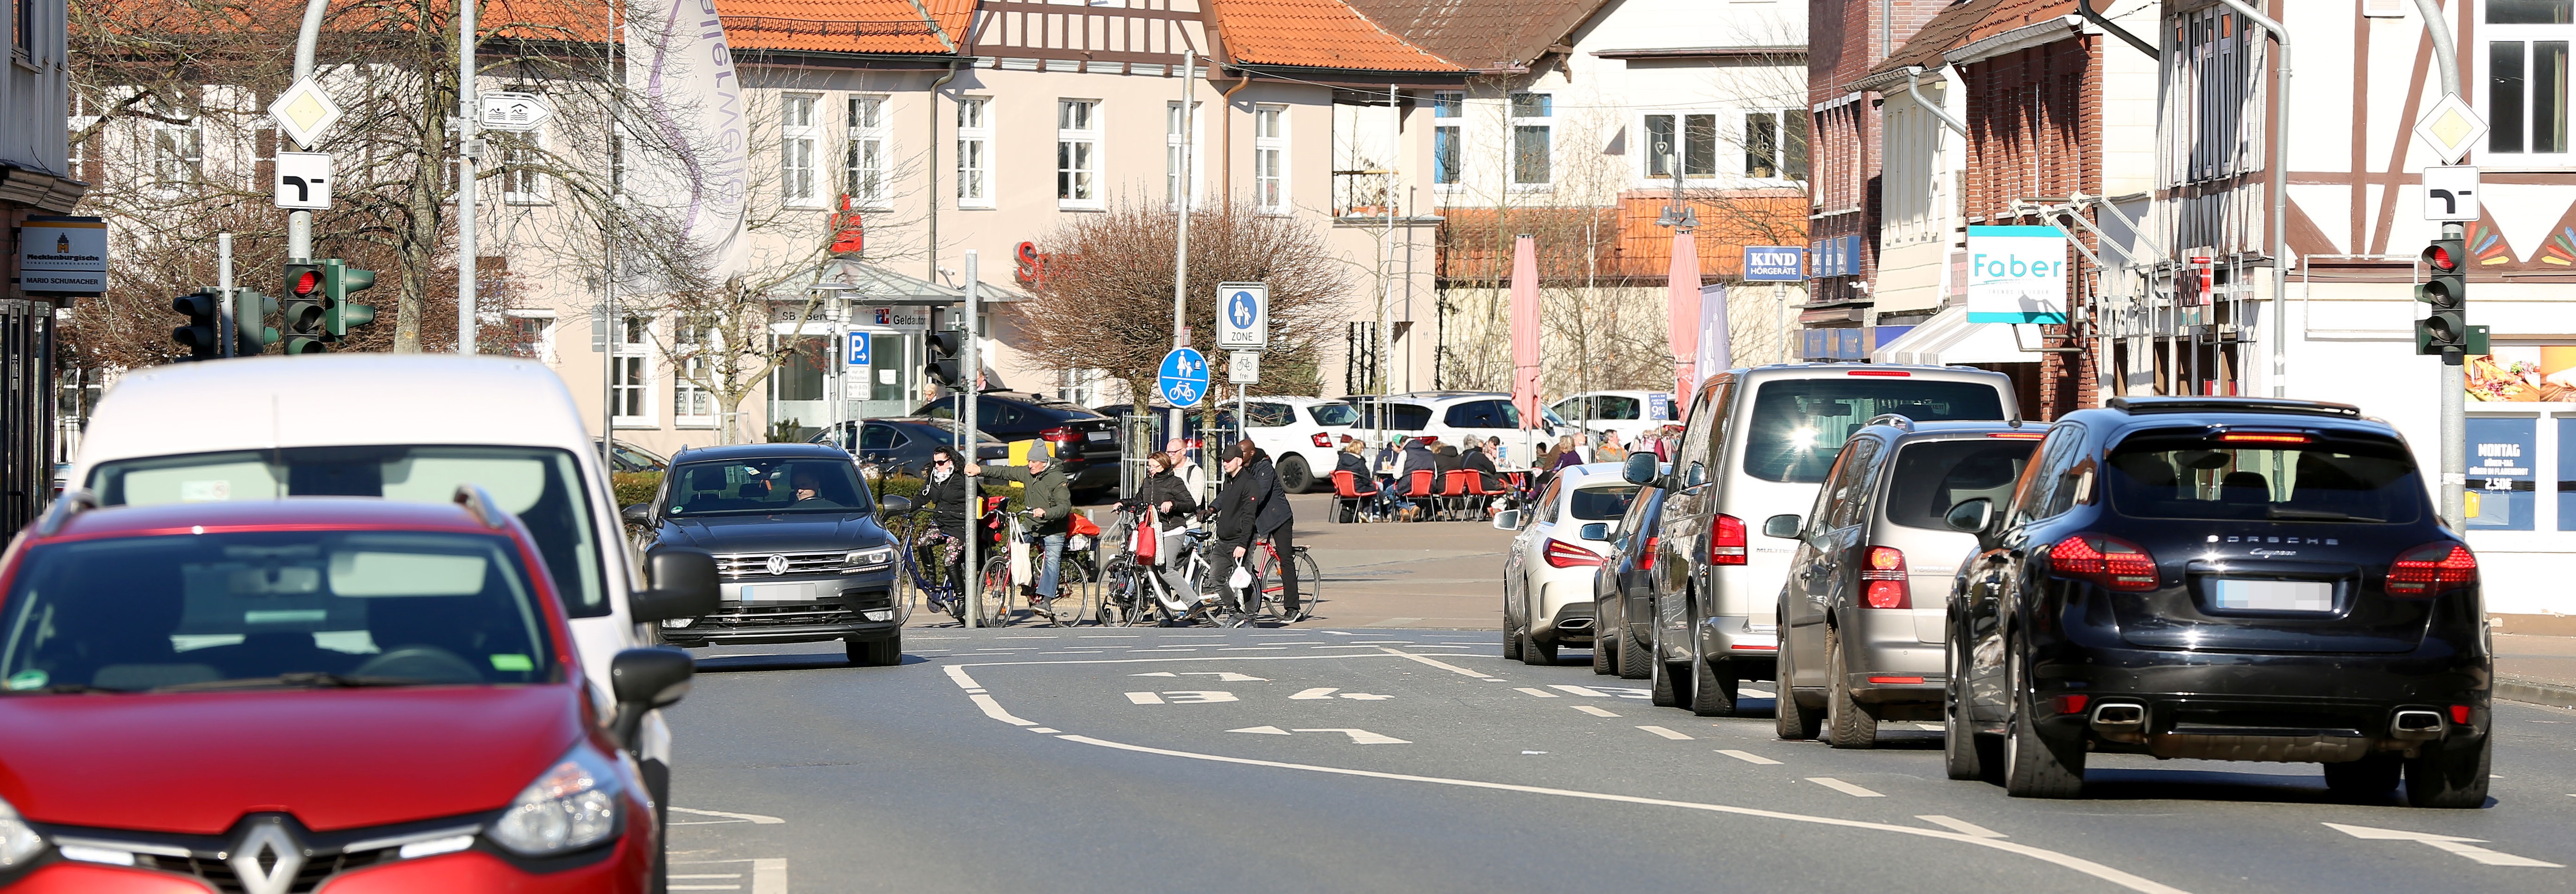 Verkehrssituation am Schillerplatz